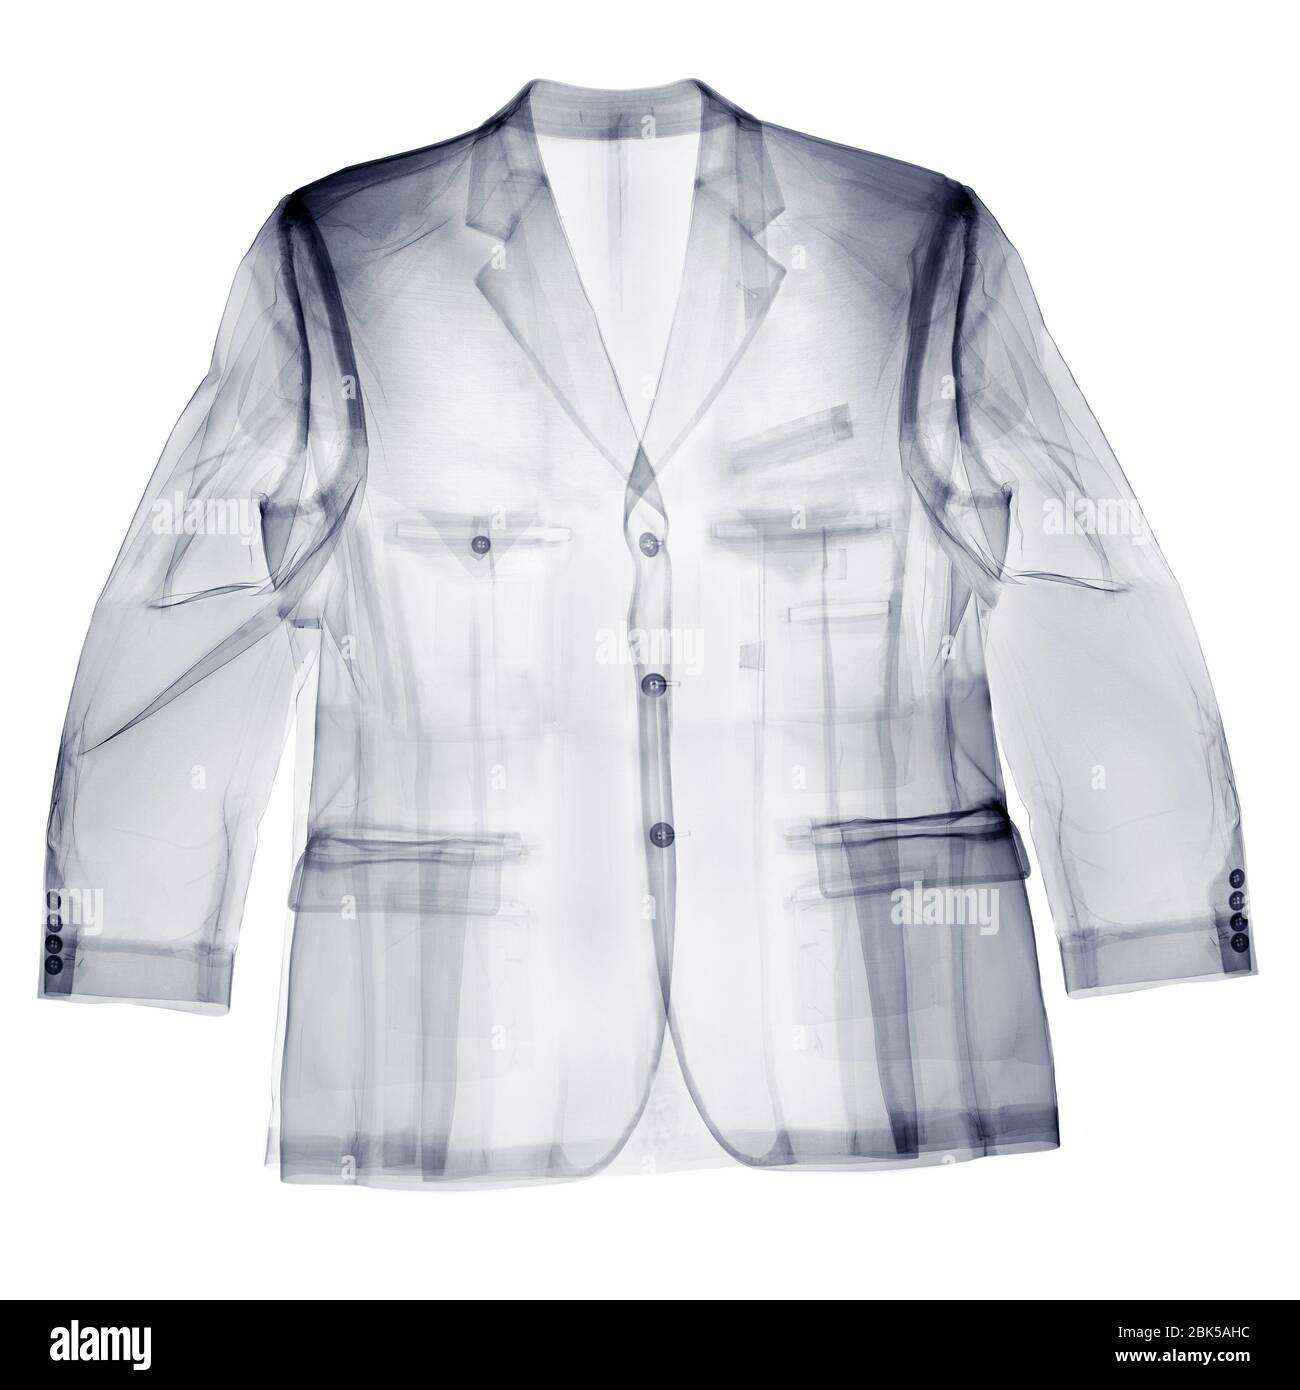 A man's jacket, X-ray. Stock Photo